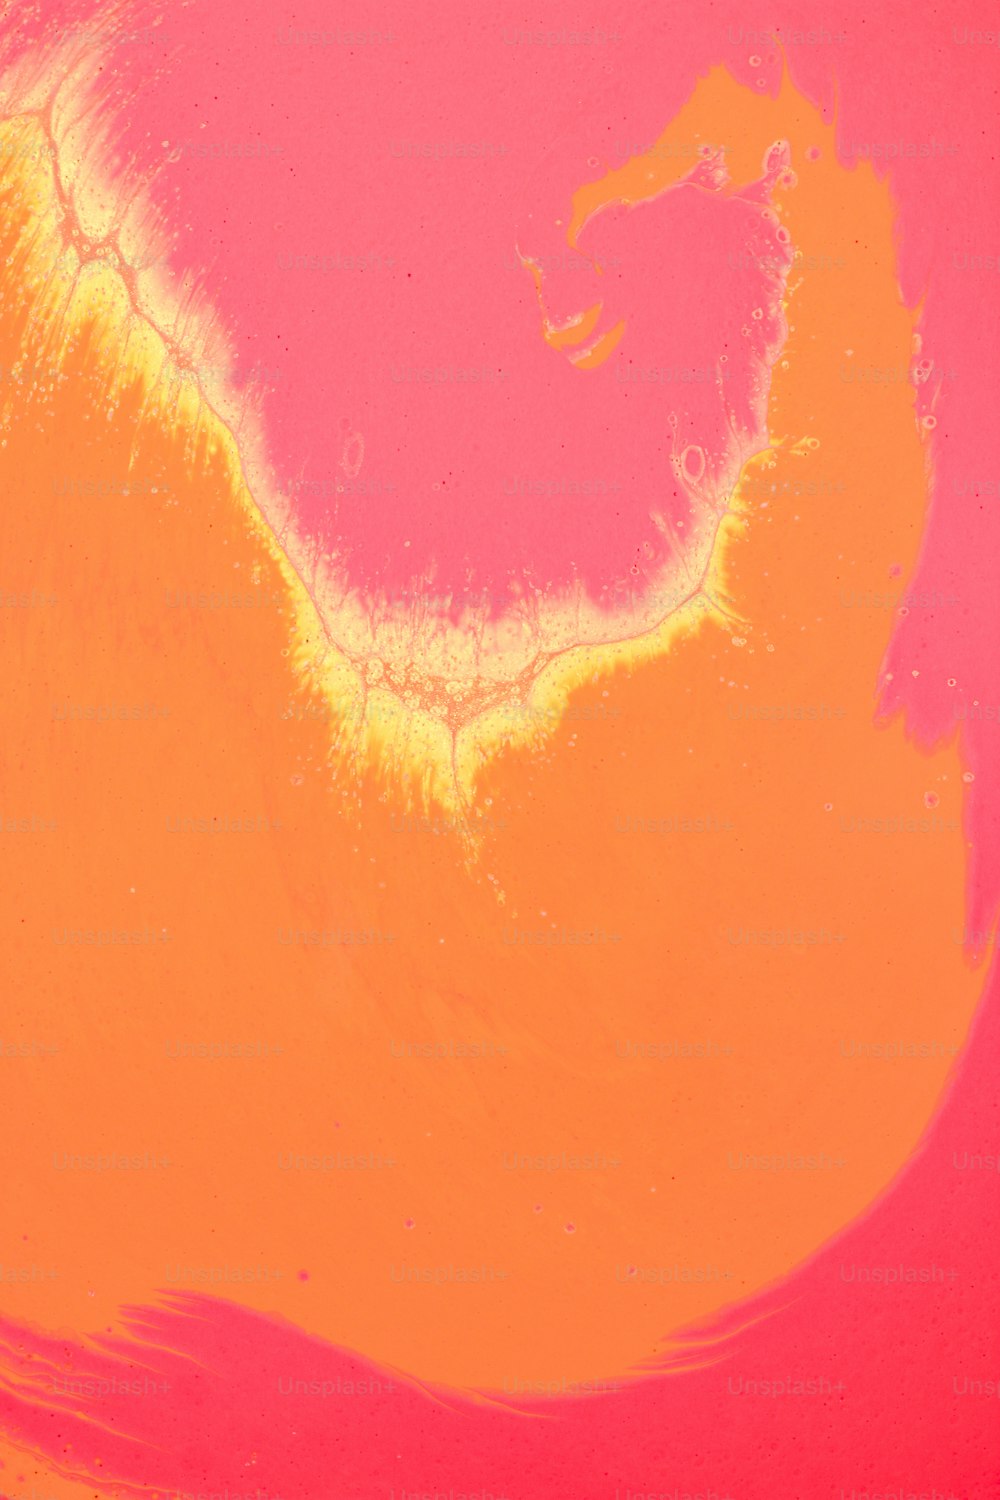 Hình ảnh màu hồng cam, Tải hình ảnh miễn phí trên Unsplash - Với hơn 30,000+ hình ảnh màu hồng cam để lựa chọn, Unsplash sẽ đem đến cho bạn những hình ảnh độc đáo và tuyệt đẹp nhất để làm mới giao diện cho thiết bị của bạn.